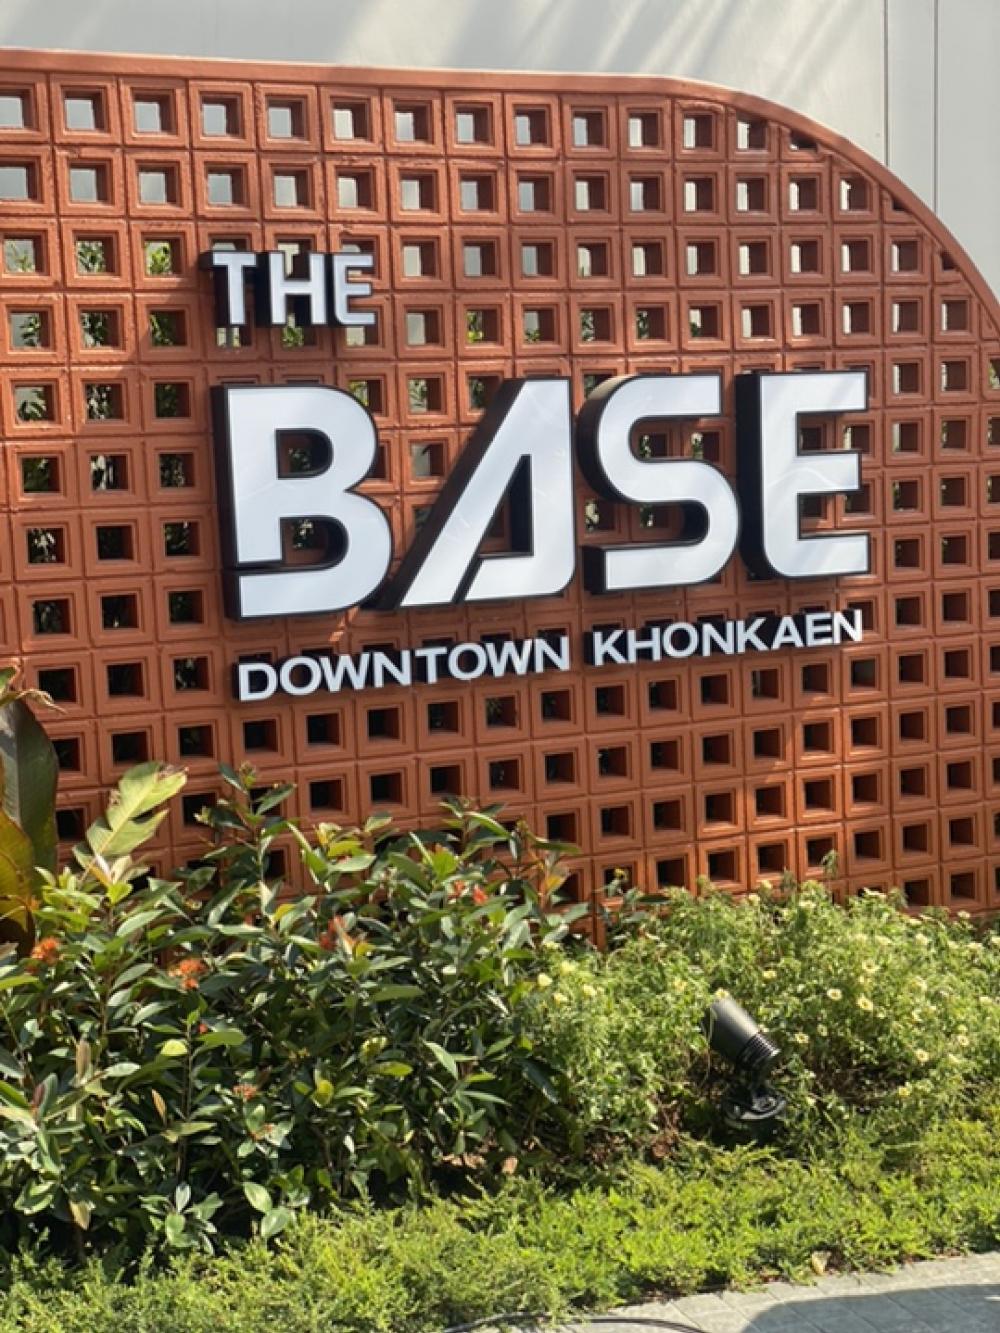 ขายคอนโดขอนแก่น : 💚 The Base Downtown Khonkaen 🤎 2 ห้องนอน 47 ตรม. เริ่ม 3.574 ล้านบาท* และจอง+สัญญา 30,000 บาท นัดหมายเข้าชมติดต่อที่ ธีรโน๊ต (Sale Project) 081-6507927 😃